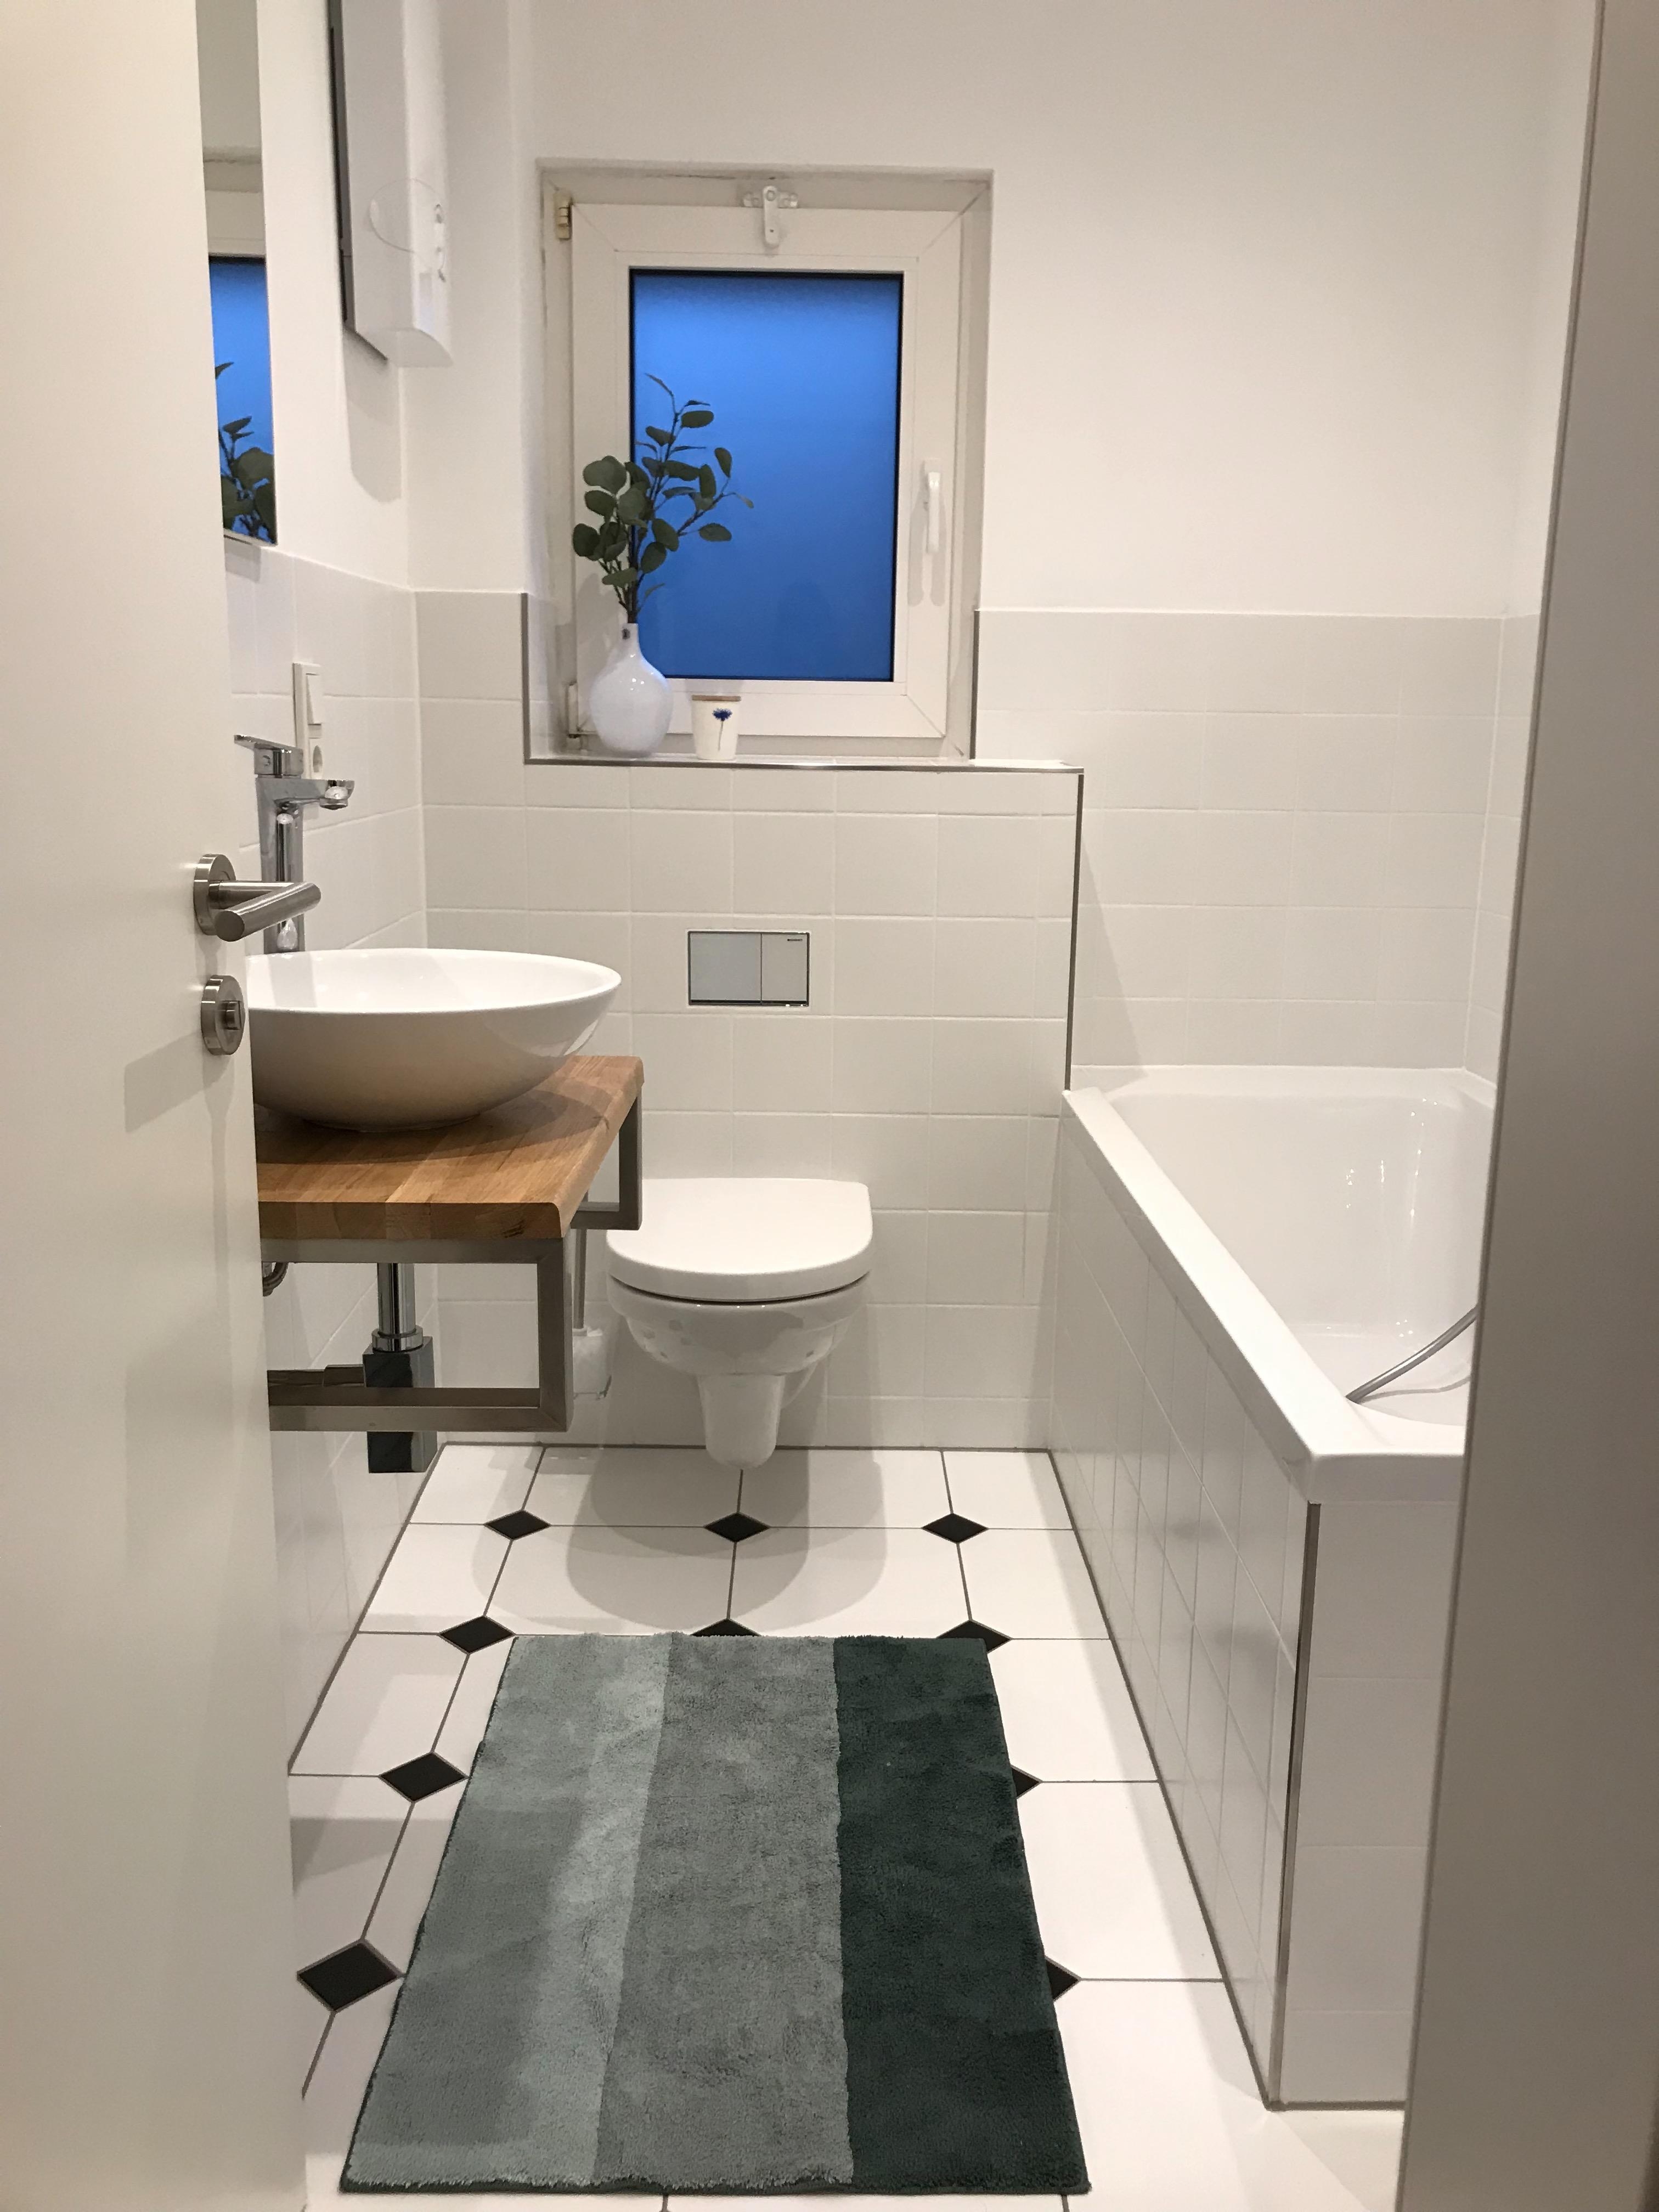 Selbst gebauter Waschtisch, Art Deco und ein bisschen Eukalyptus. #bathroom #artdeco #solebich